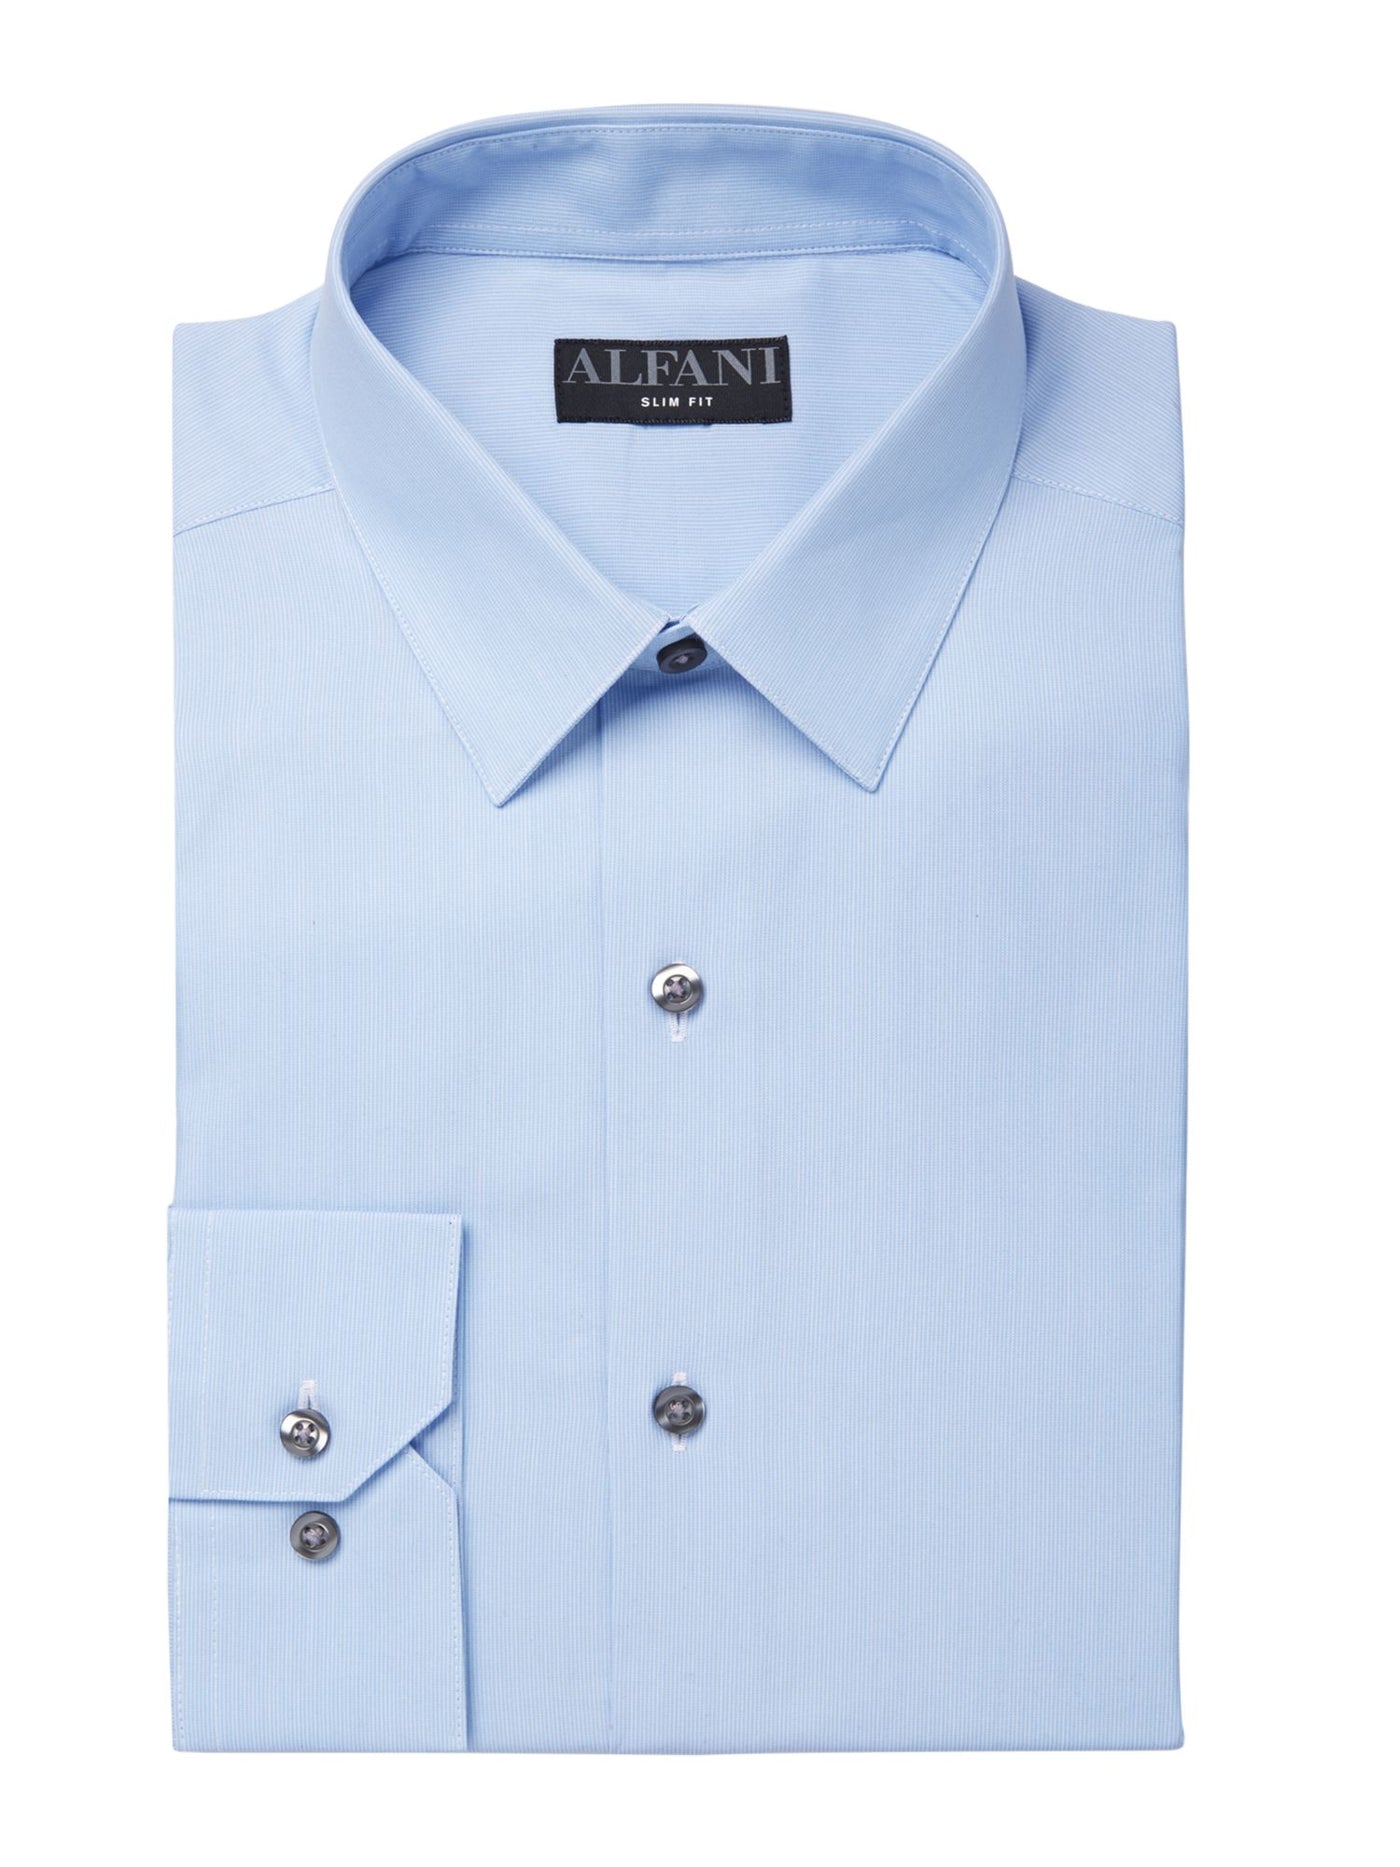 ALFANI Mens Light Blue Collared Slim Fit Dress Shirt XL 17/17.5- 36/37